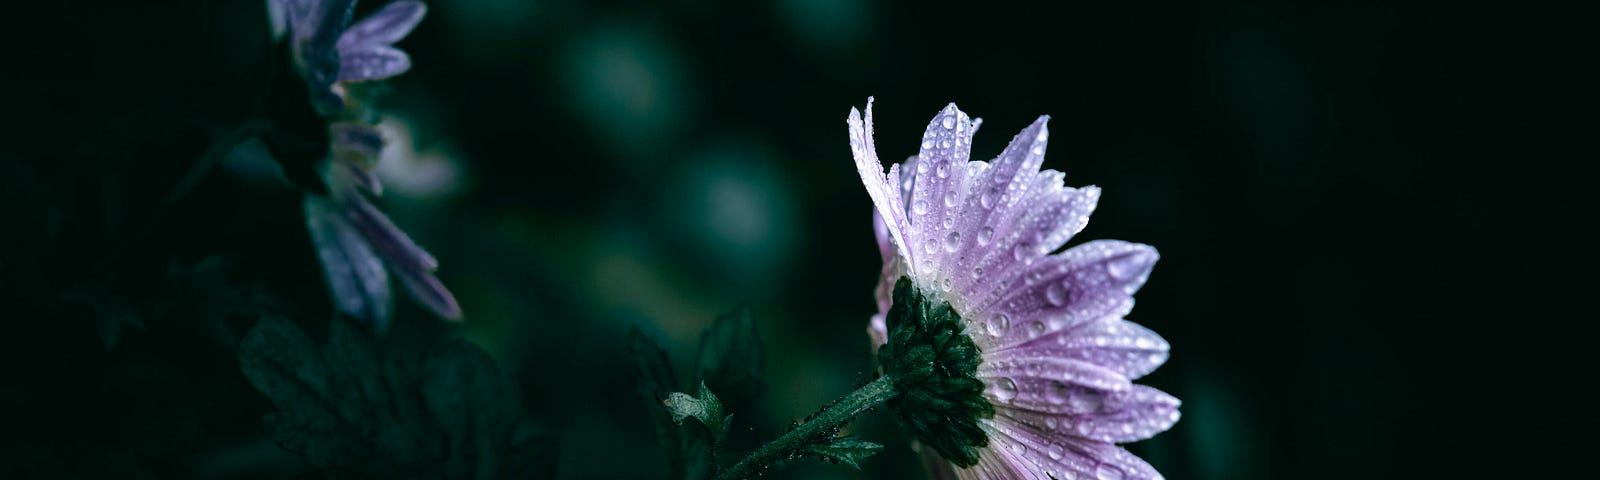 Purple Flower in Rain